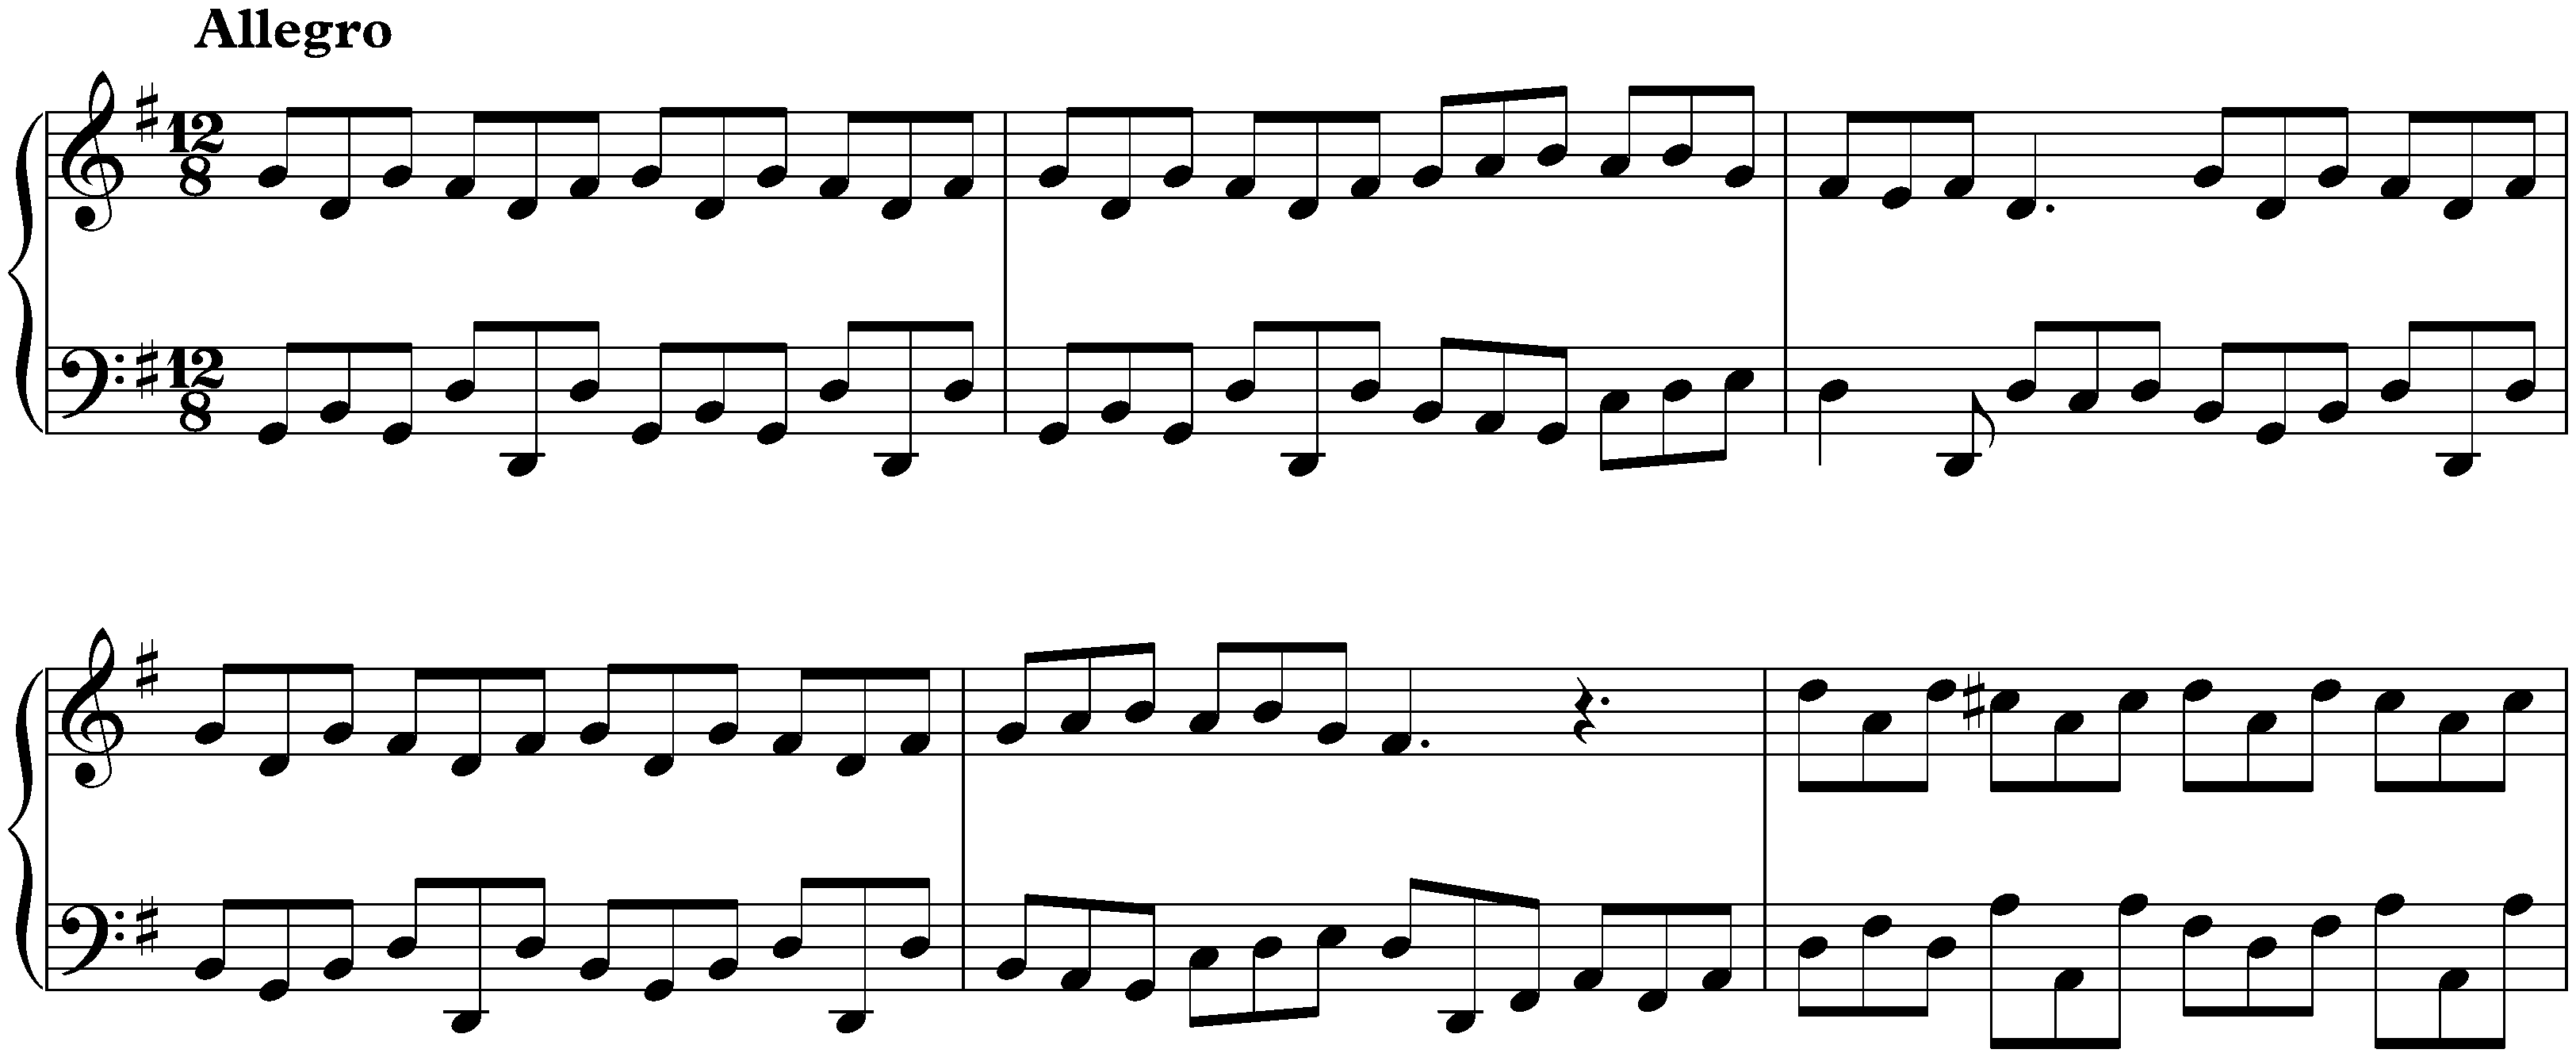 Concerto in G major after Antonio Vivaldi, BWV 980; 3. Allegro